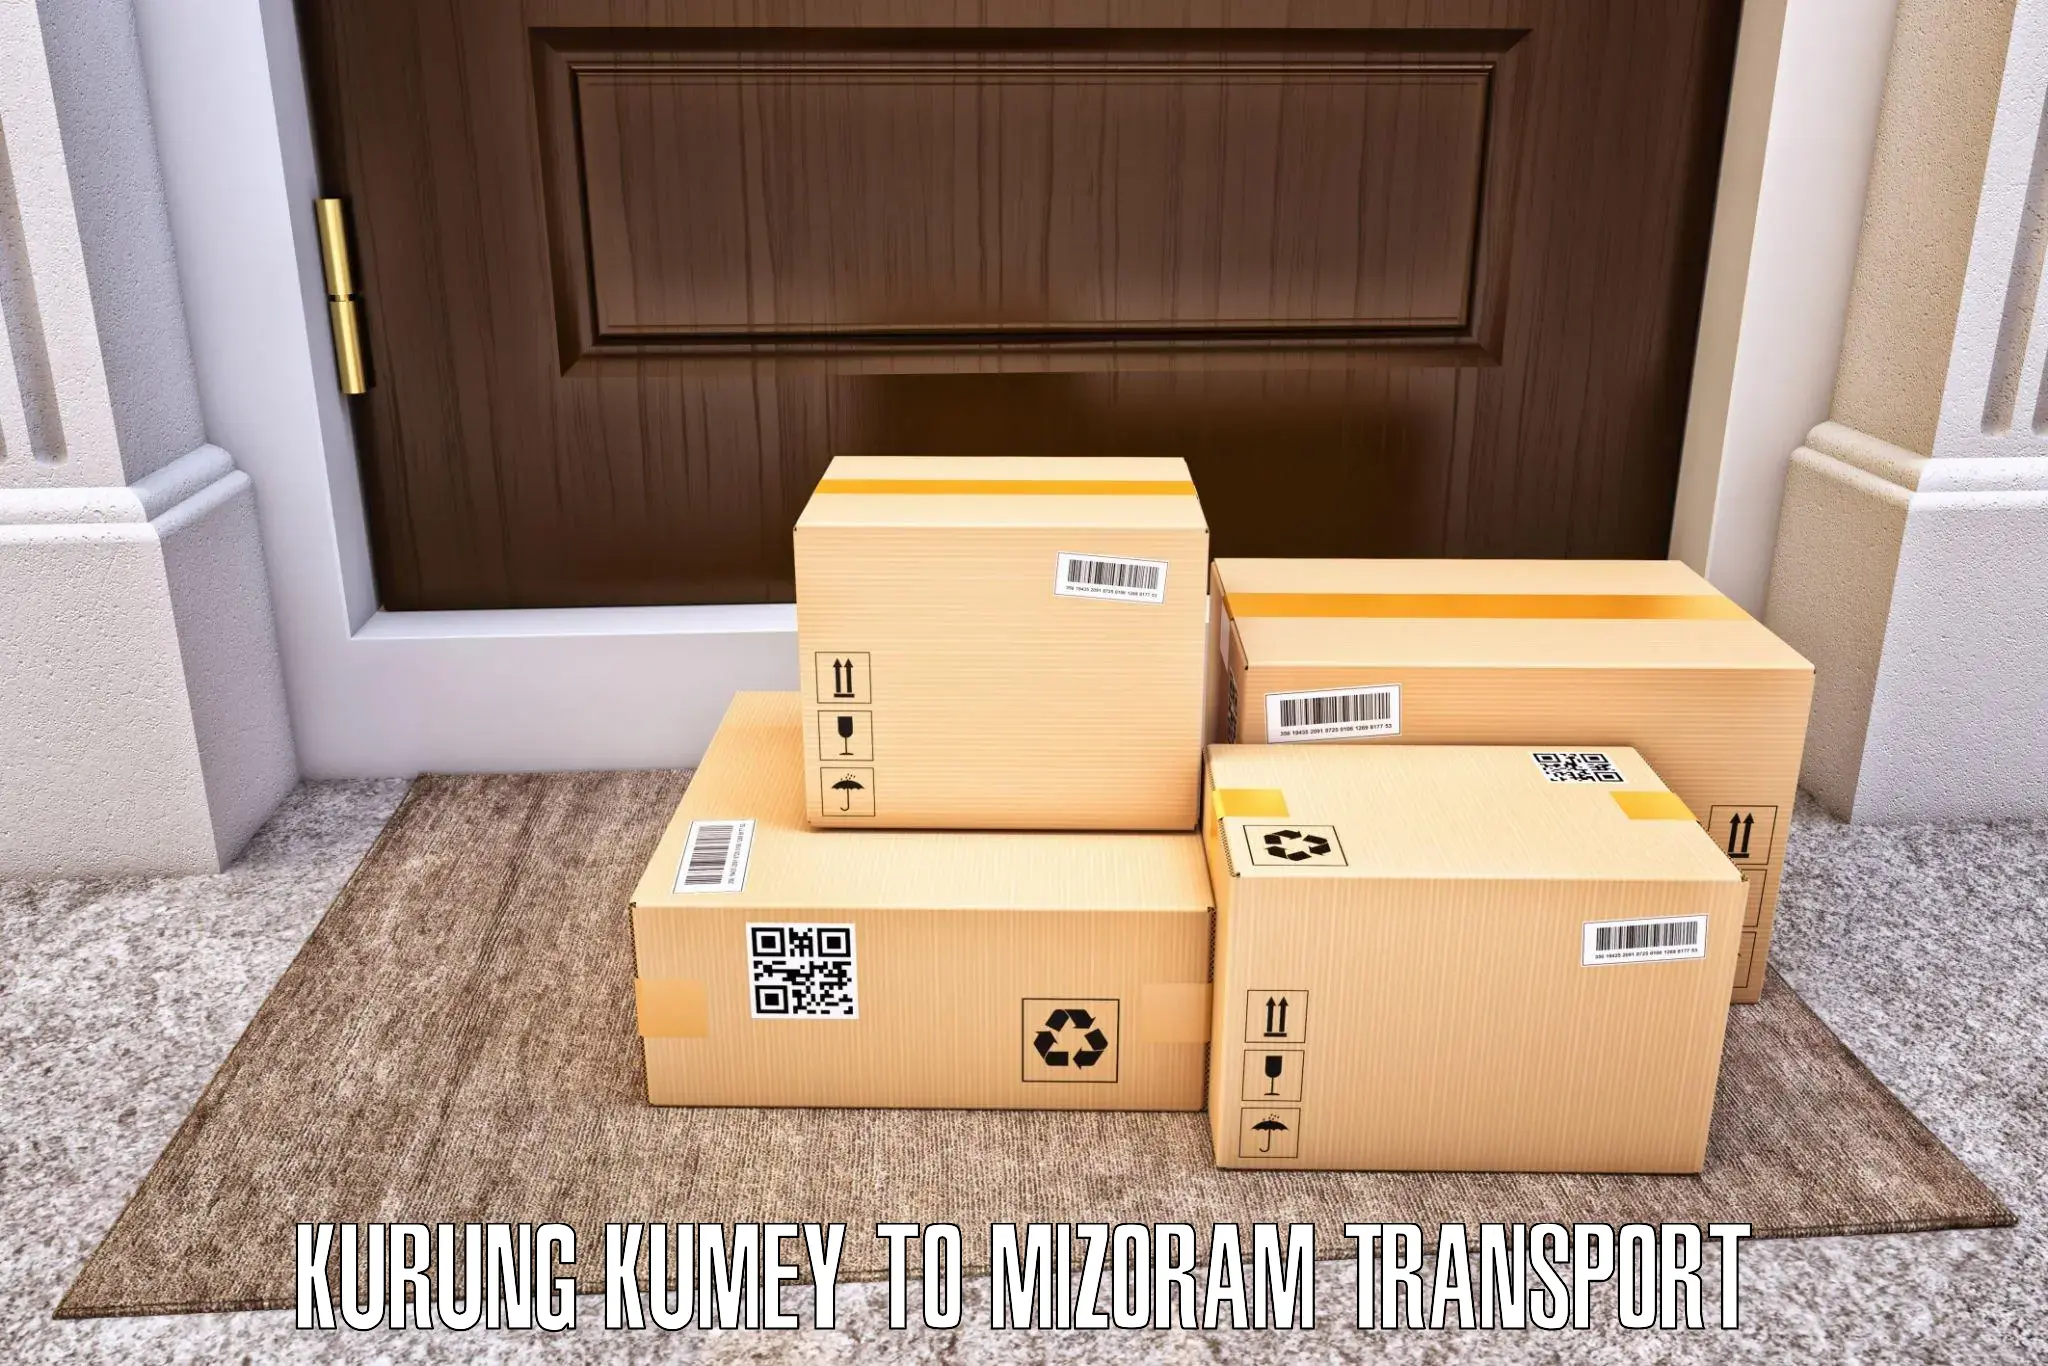 Lorry transport service Kurung Kumey to NIT Aizawl